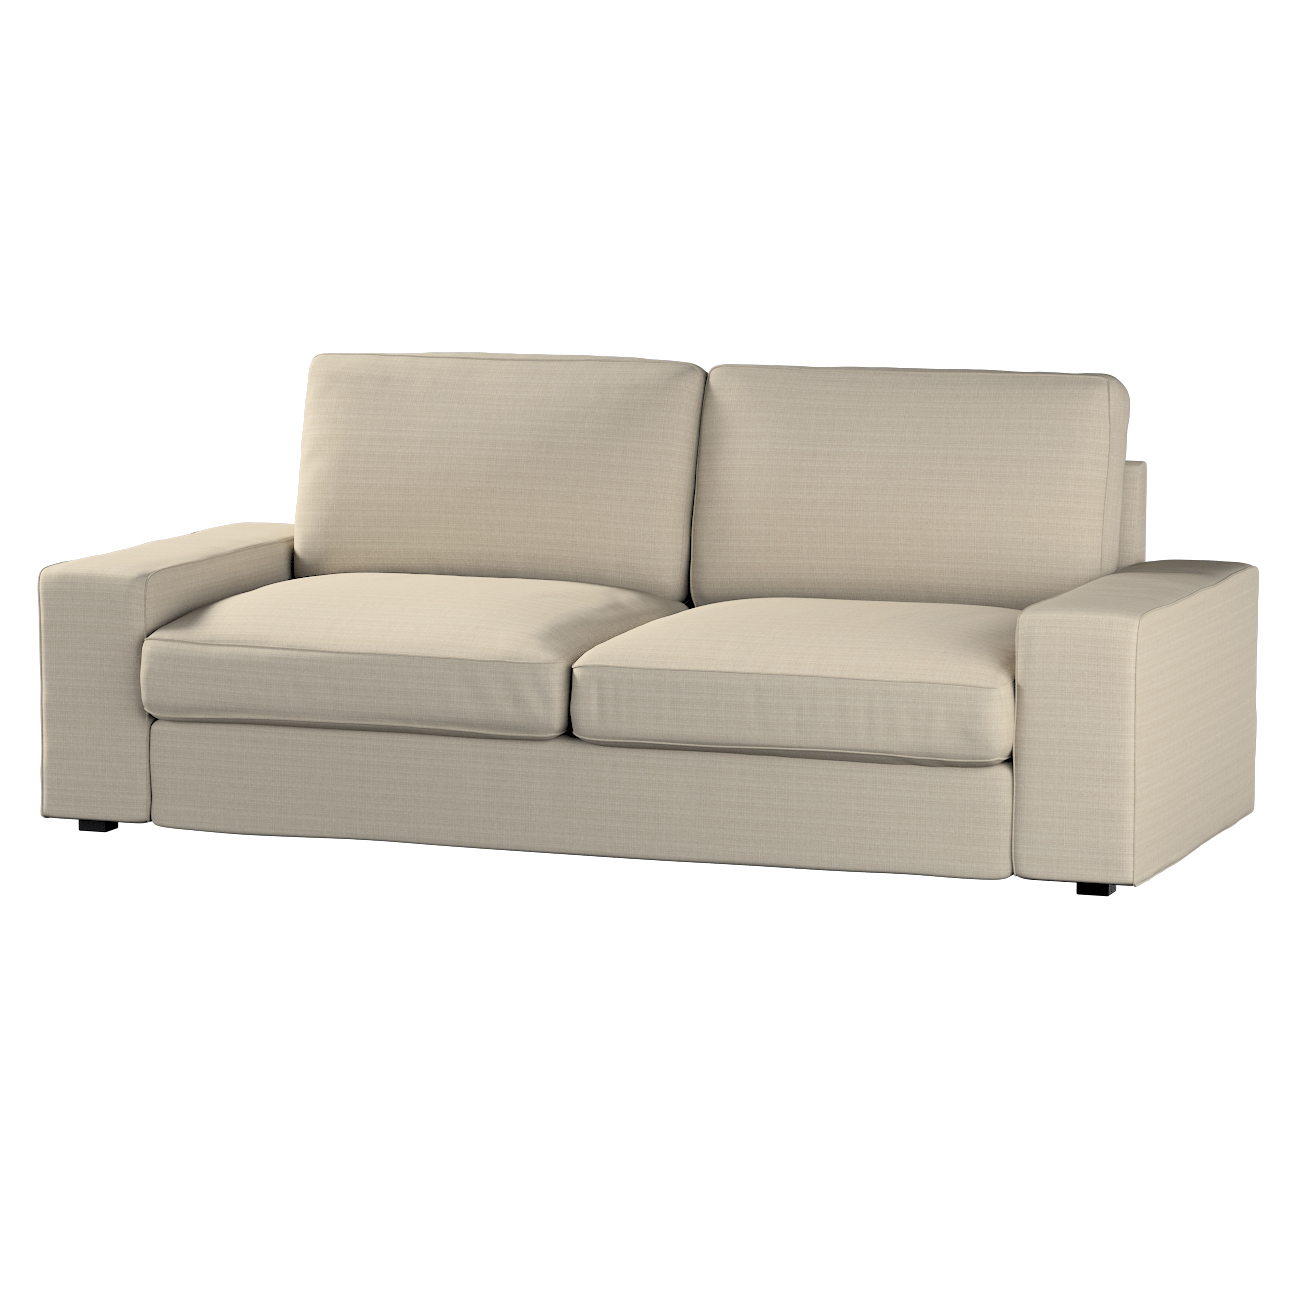 Bezug für Kivik 3-Sitzer Sofa, beige, Bezug für Sofa Kivik 3-Sitzer, Living günstig online kaufen